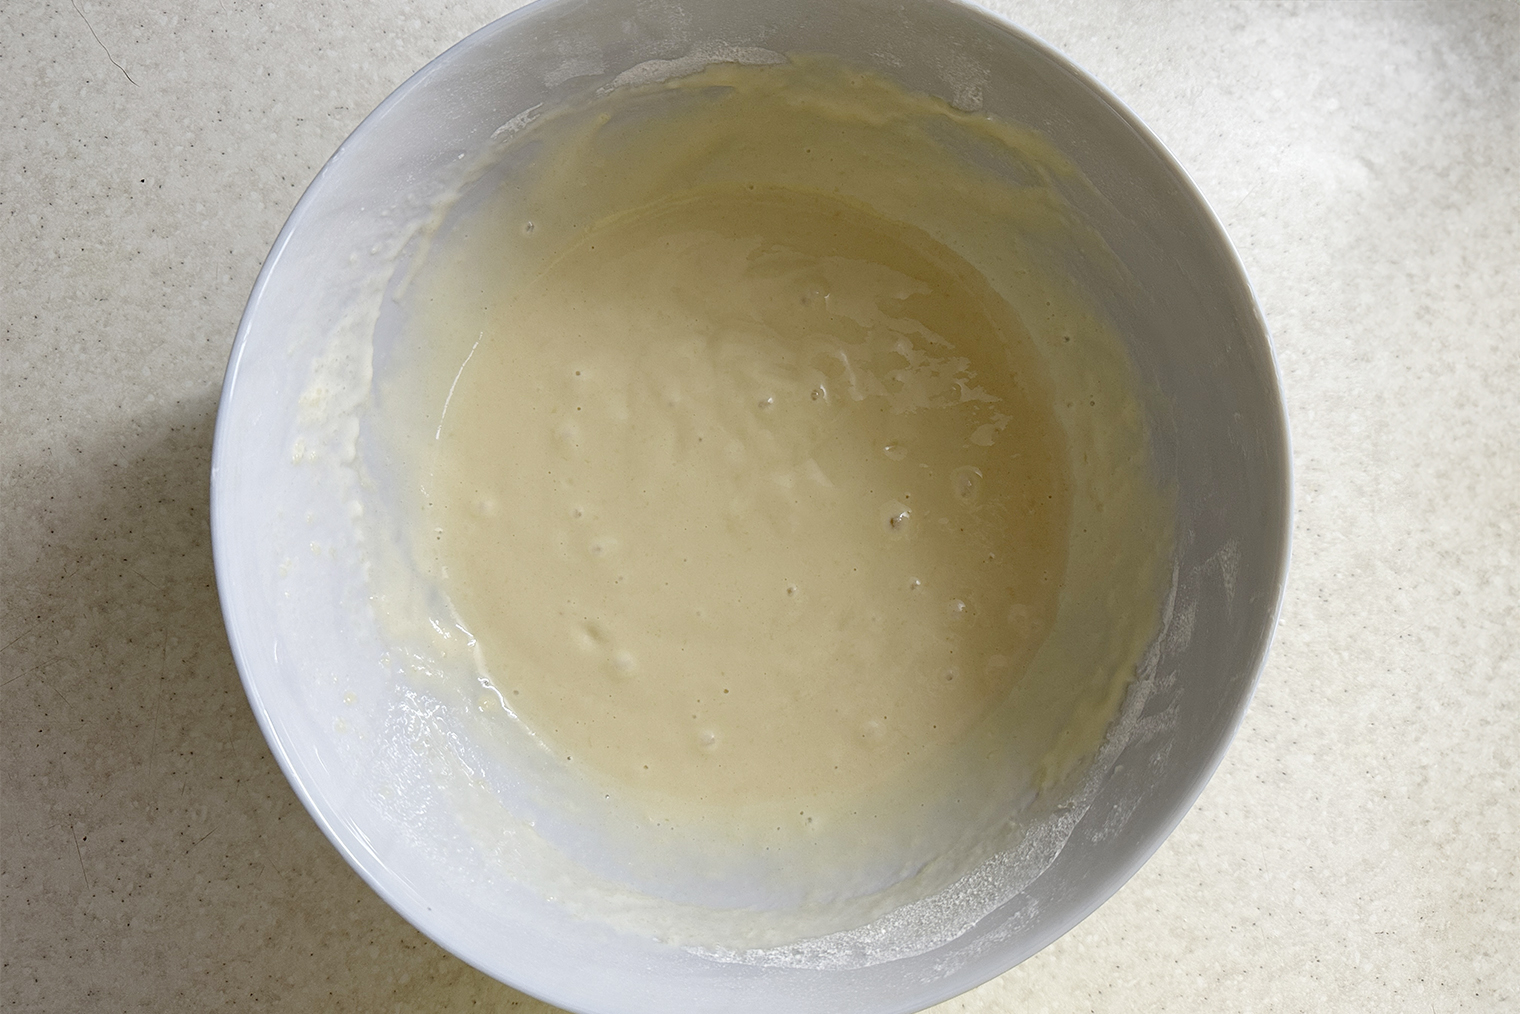 Так выглядит тесто после добавления первой порции молока. Оно густое и насыщенного бежевого цвета